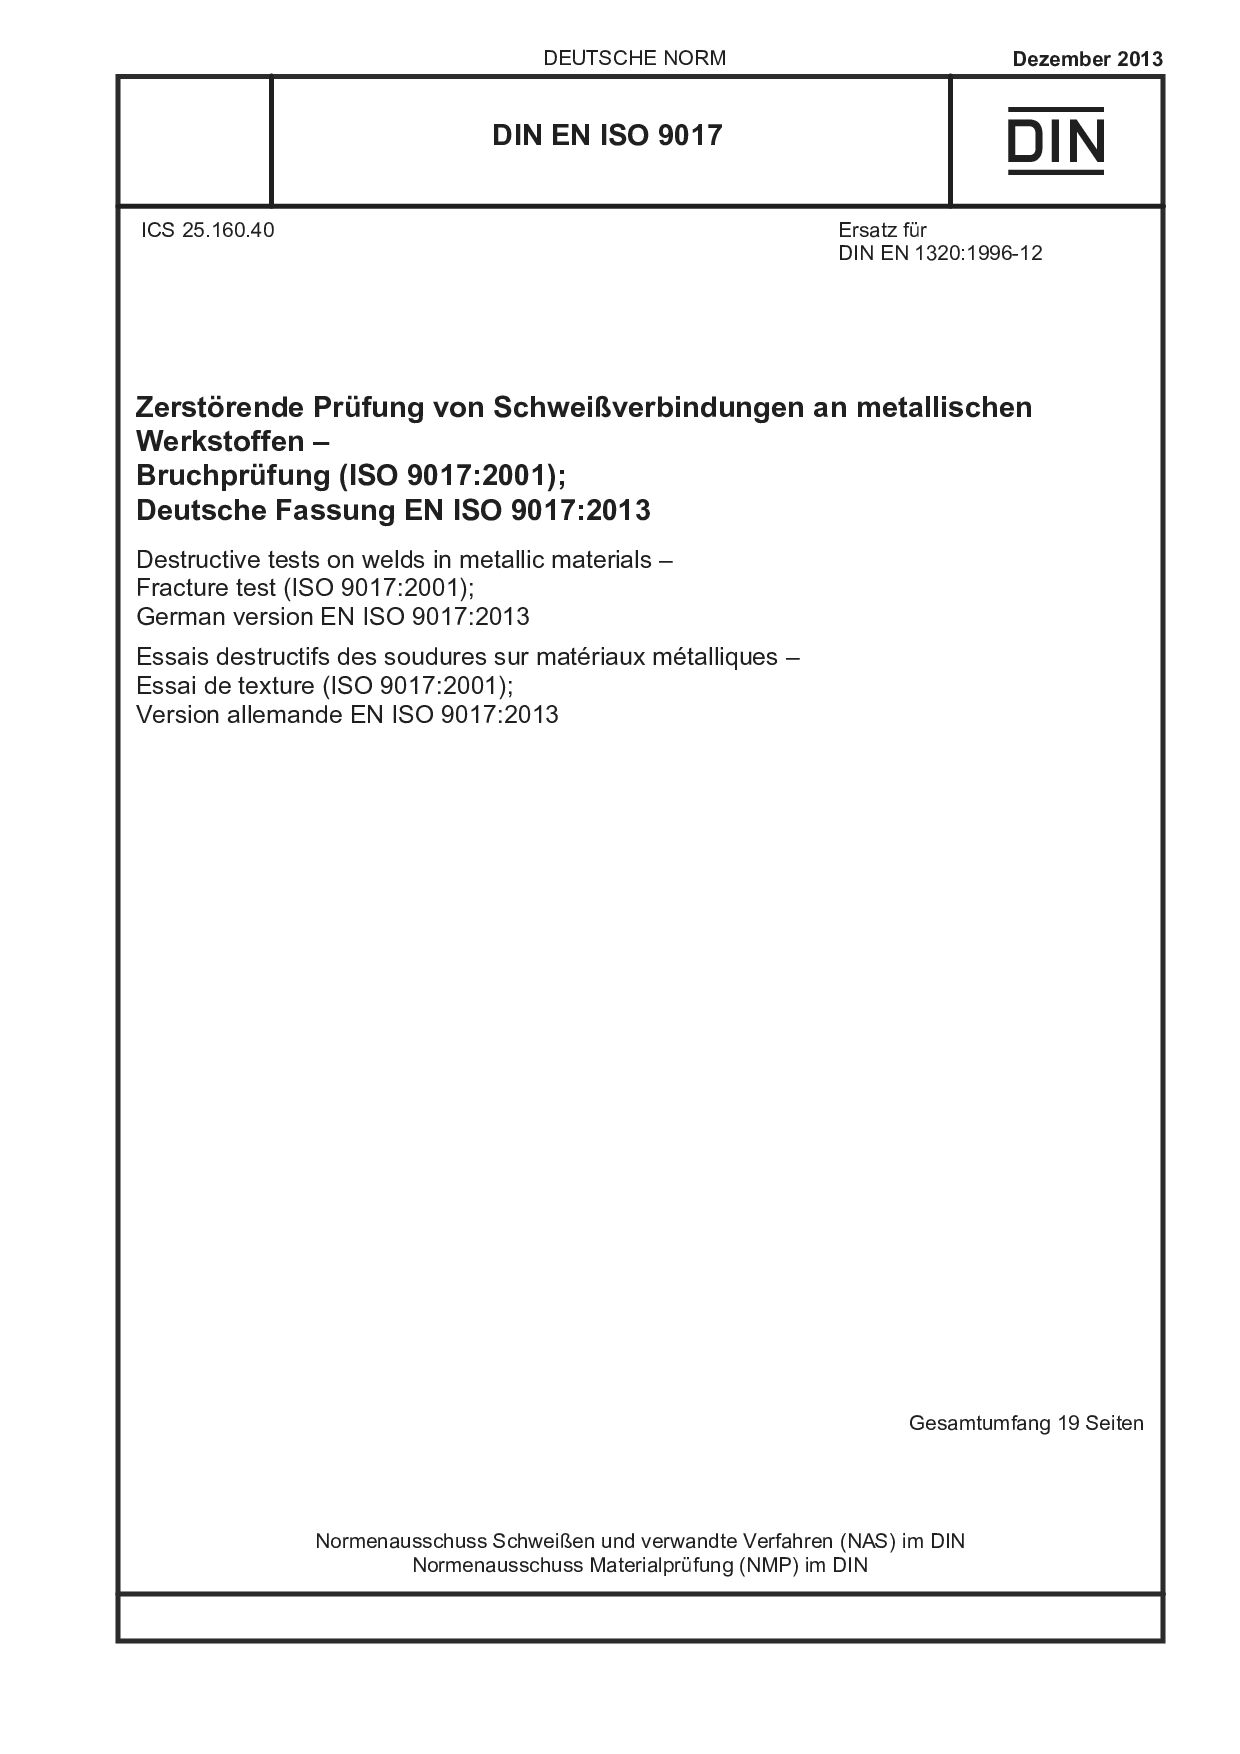 DIN EN ISO 9017:2013封面图